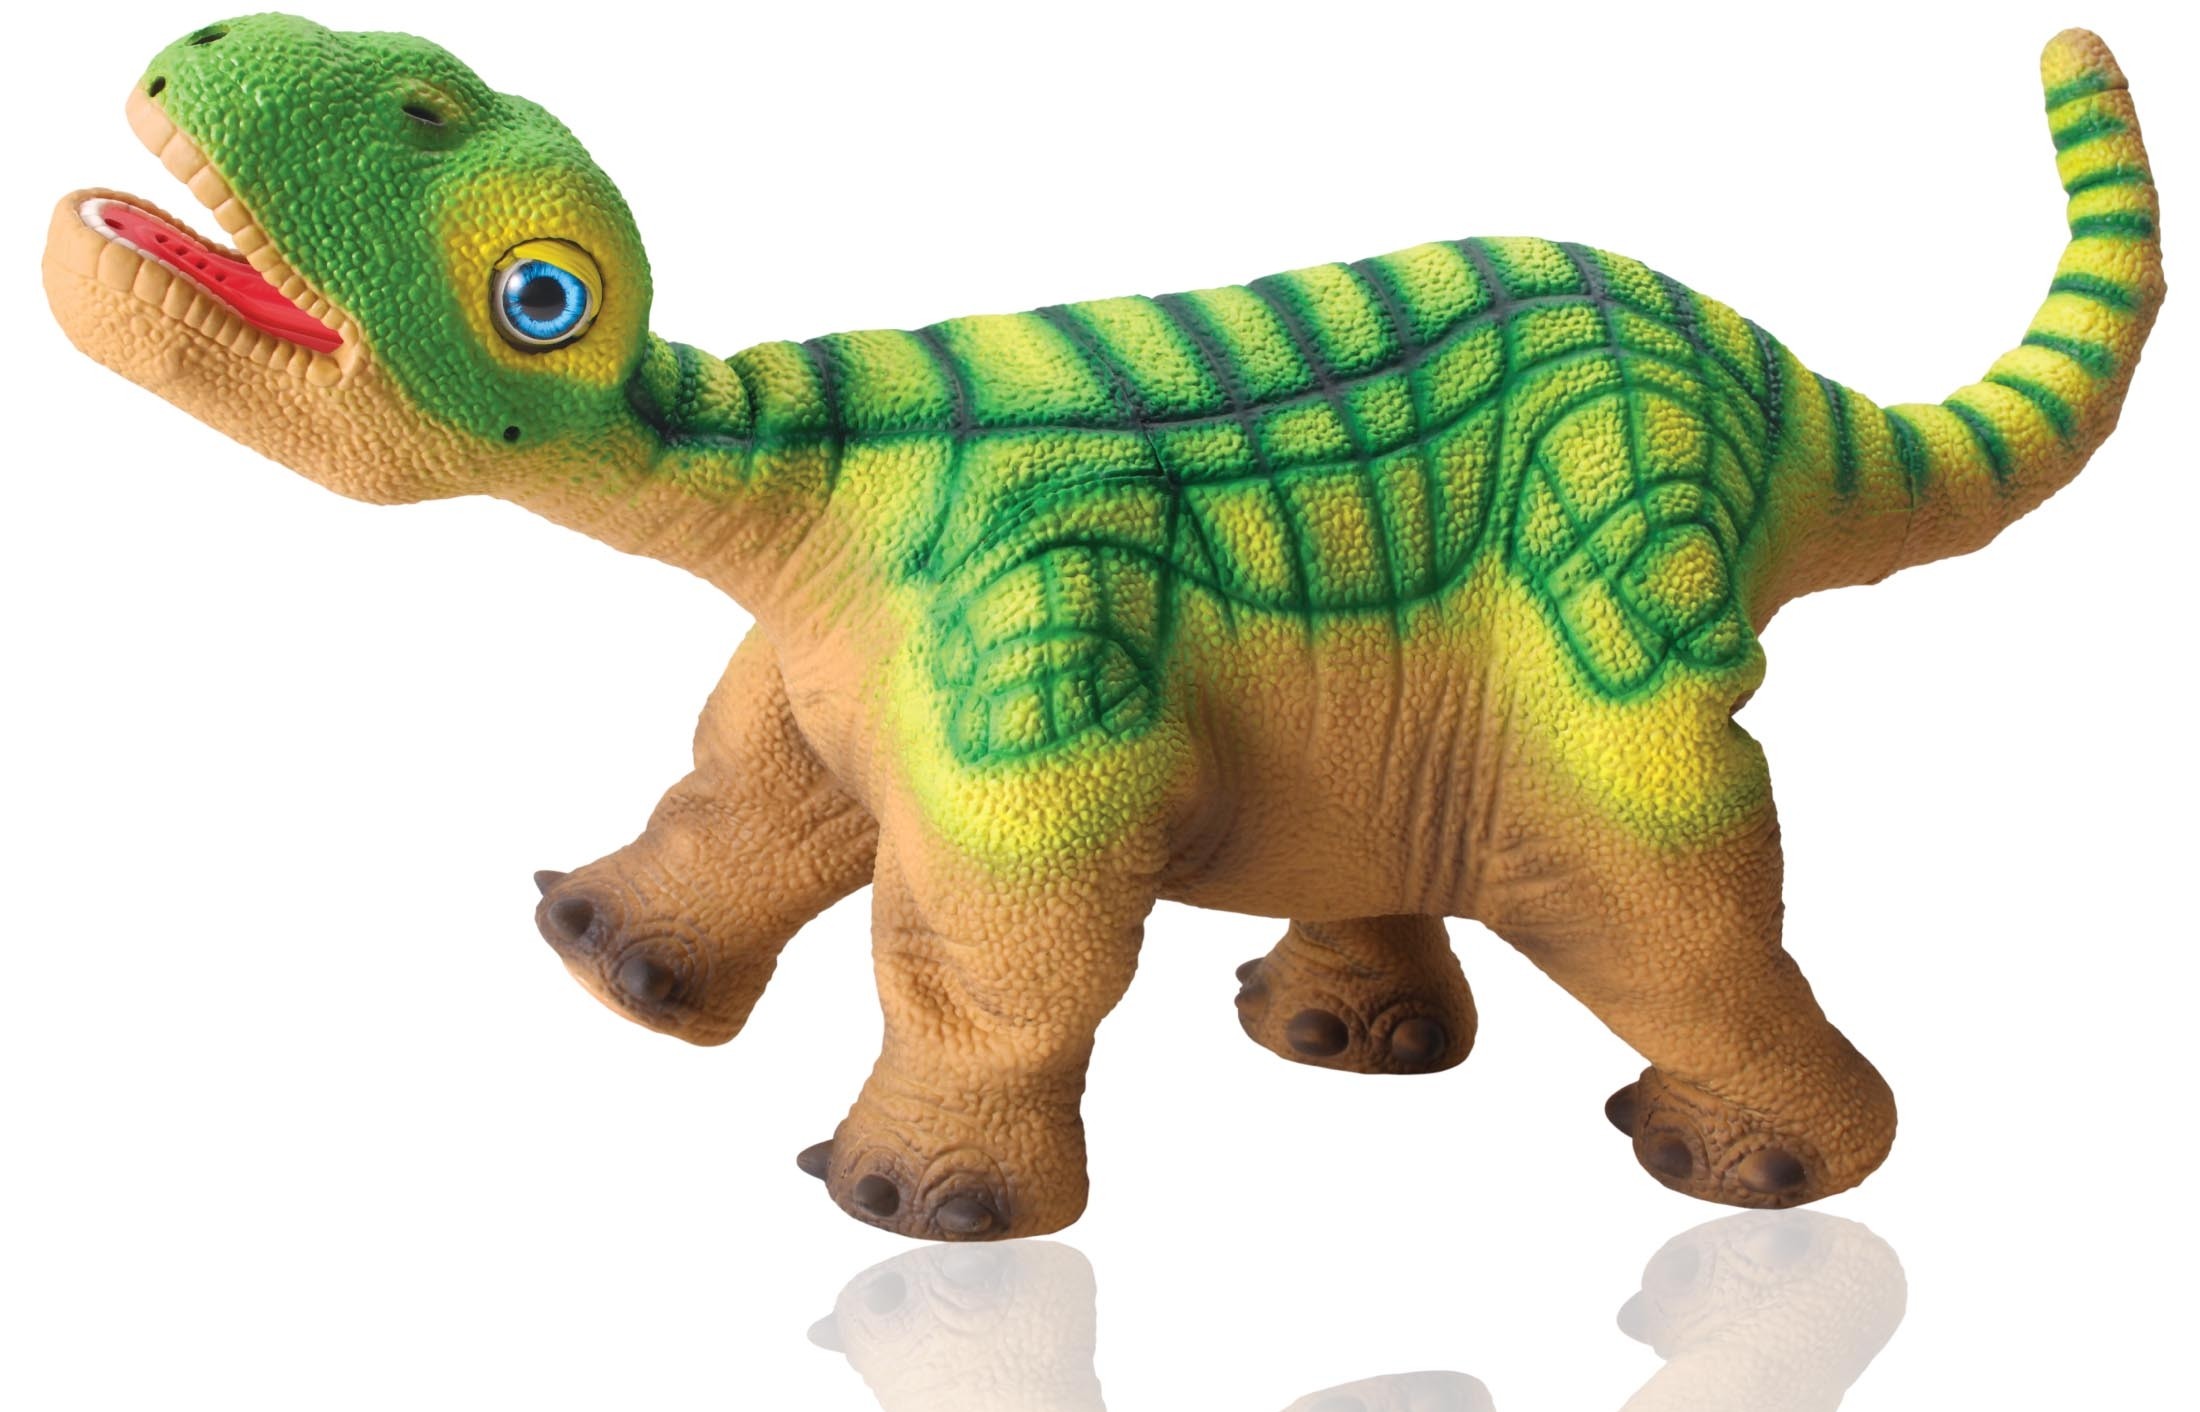 Hightech fürs Kinderzimmer: Der Dinosaurierroboter Pleo